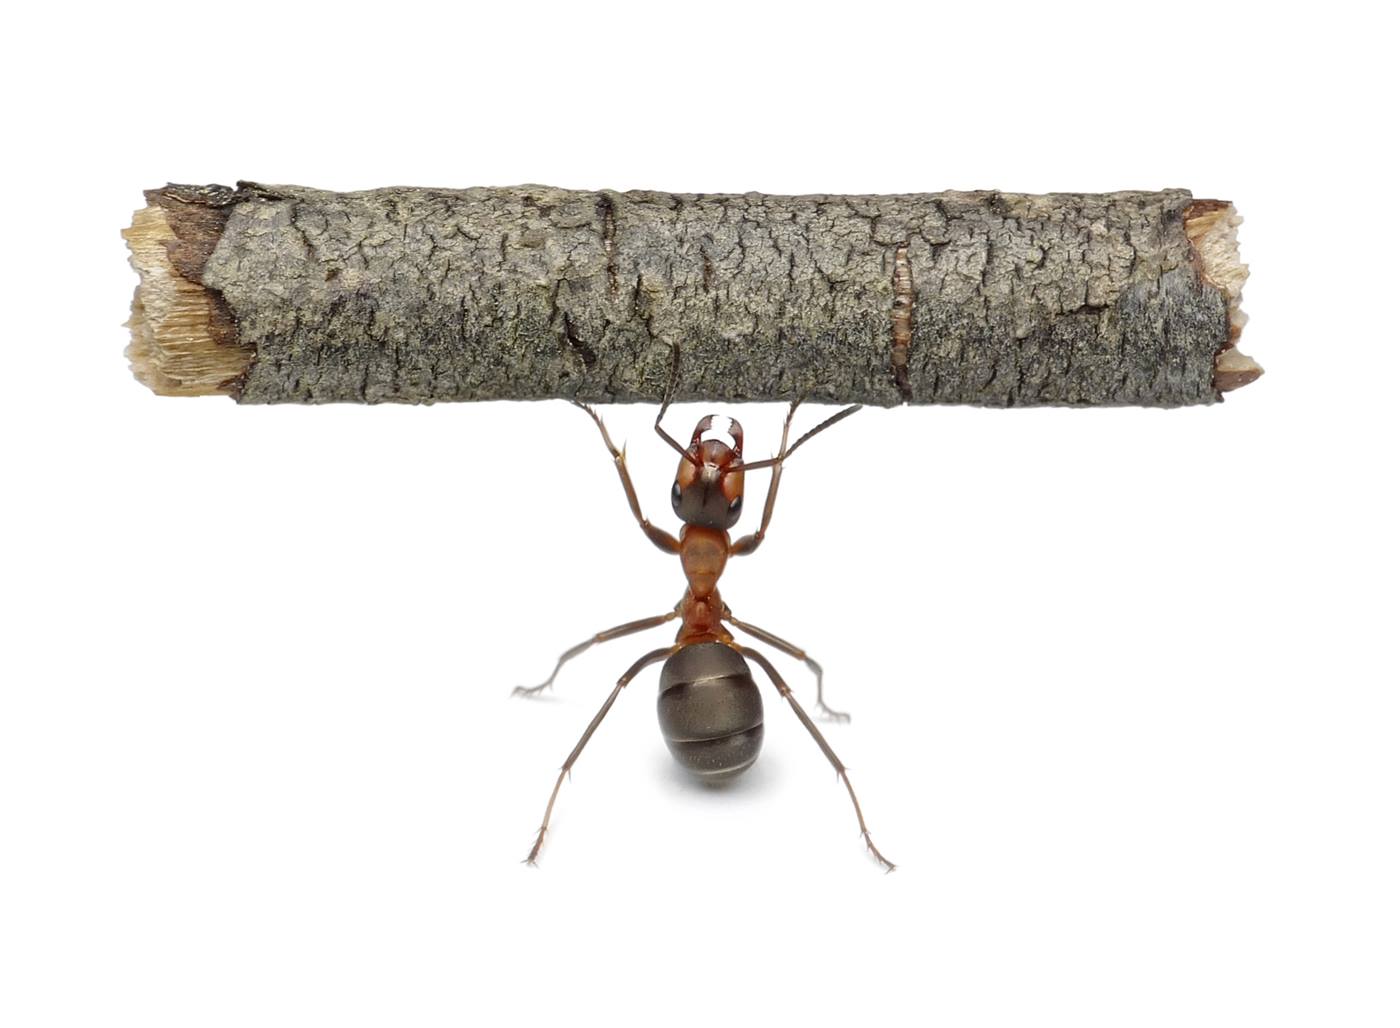 An ant lifts a stick 